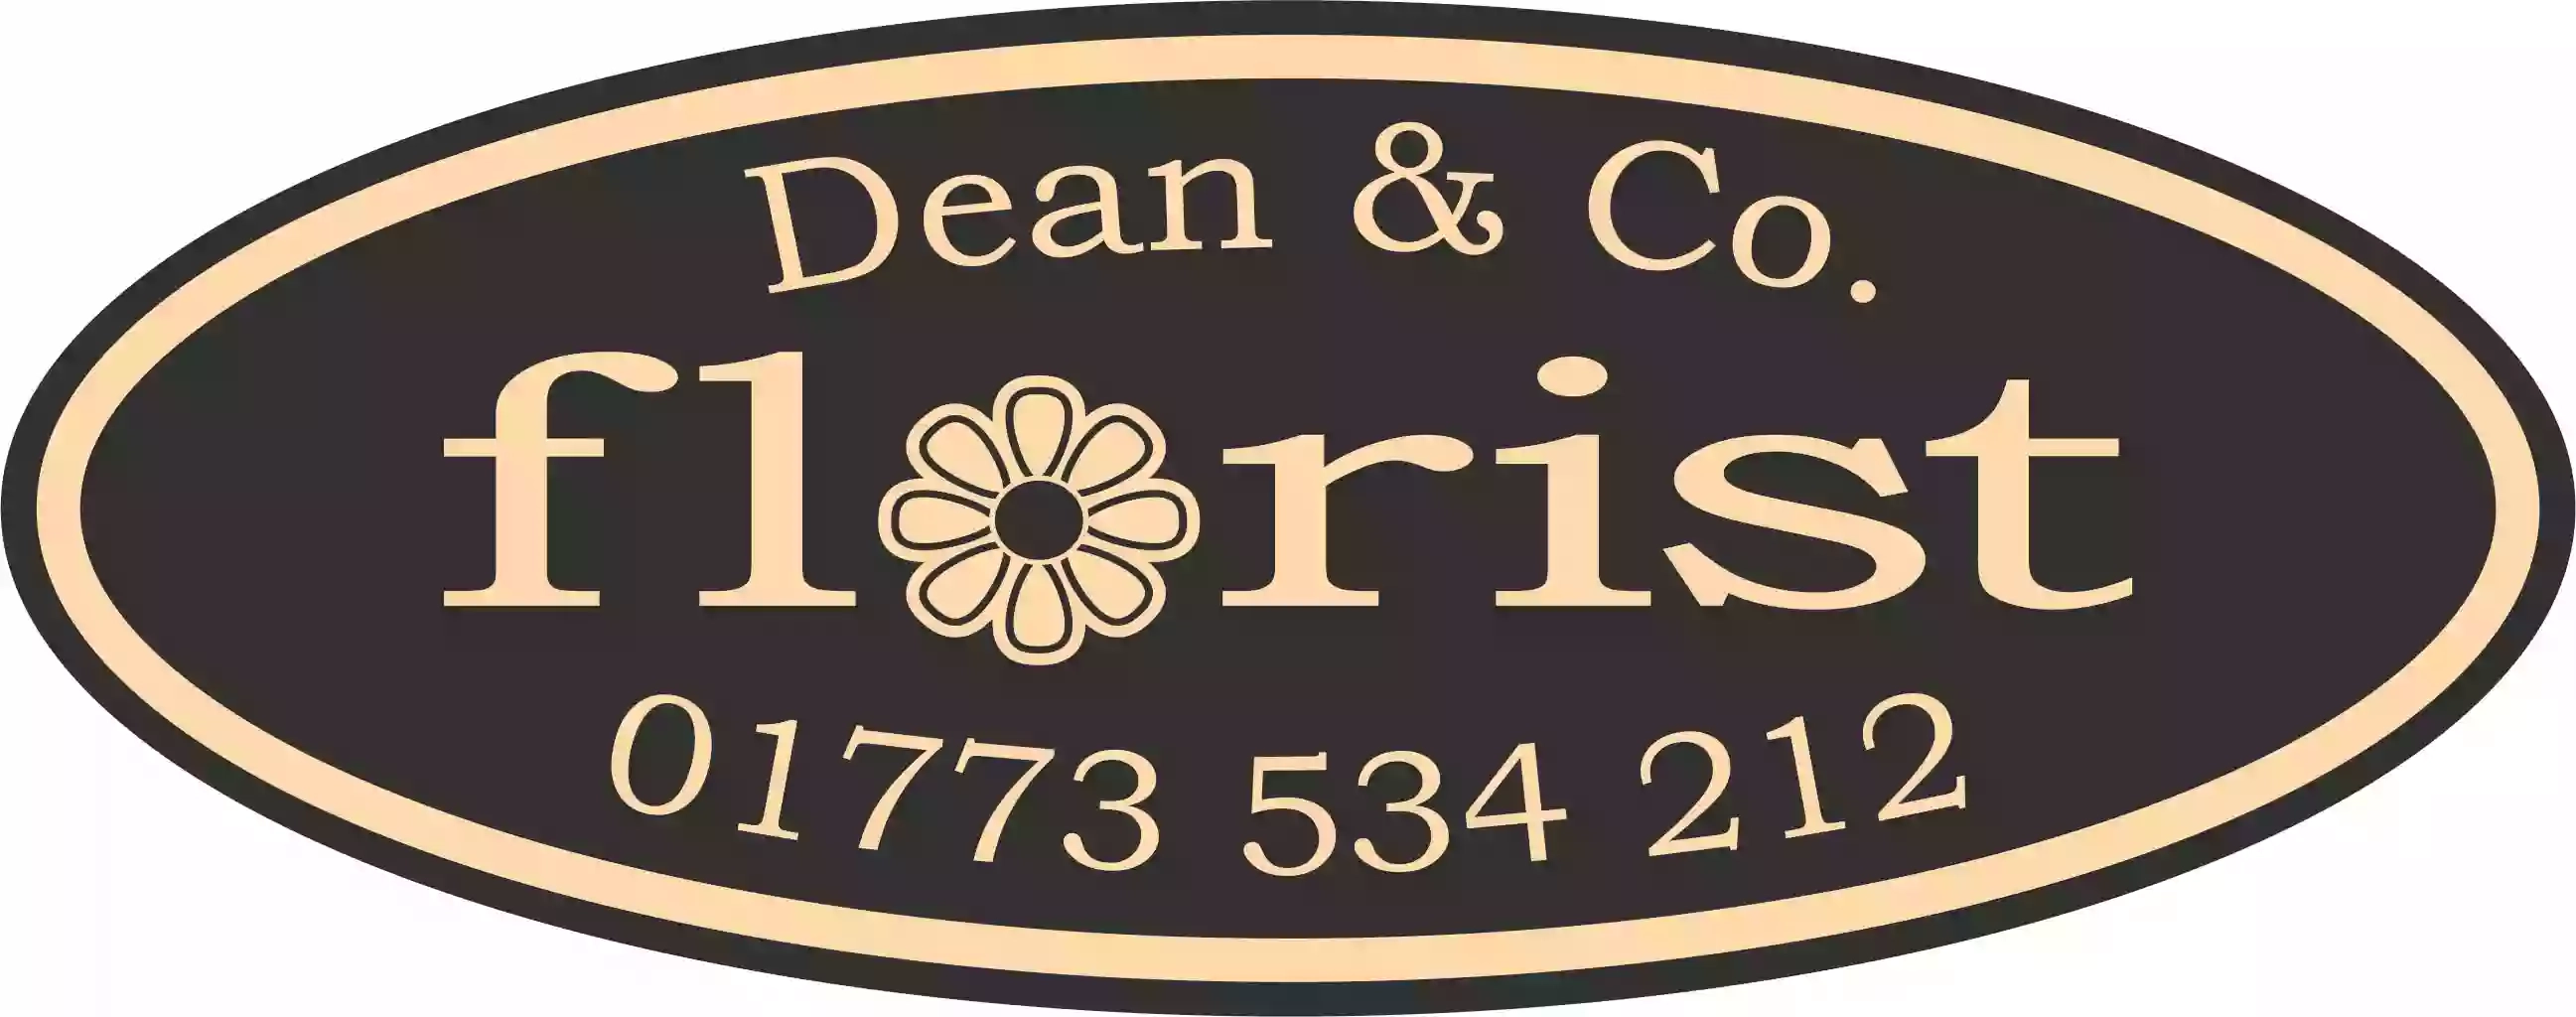 Dean & Co Florist